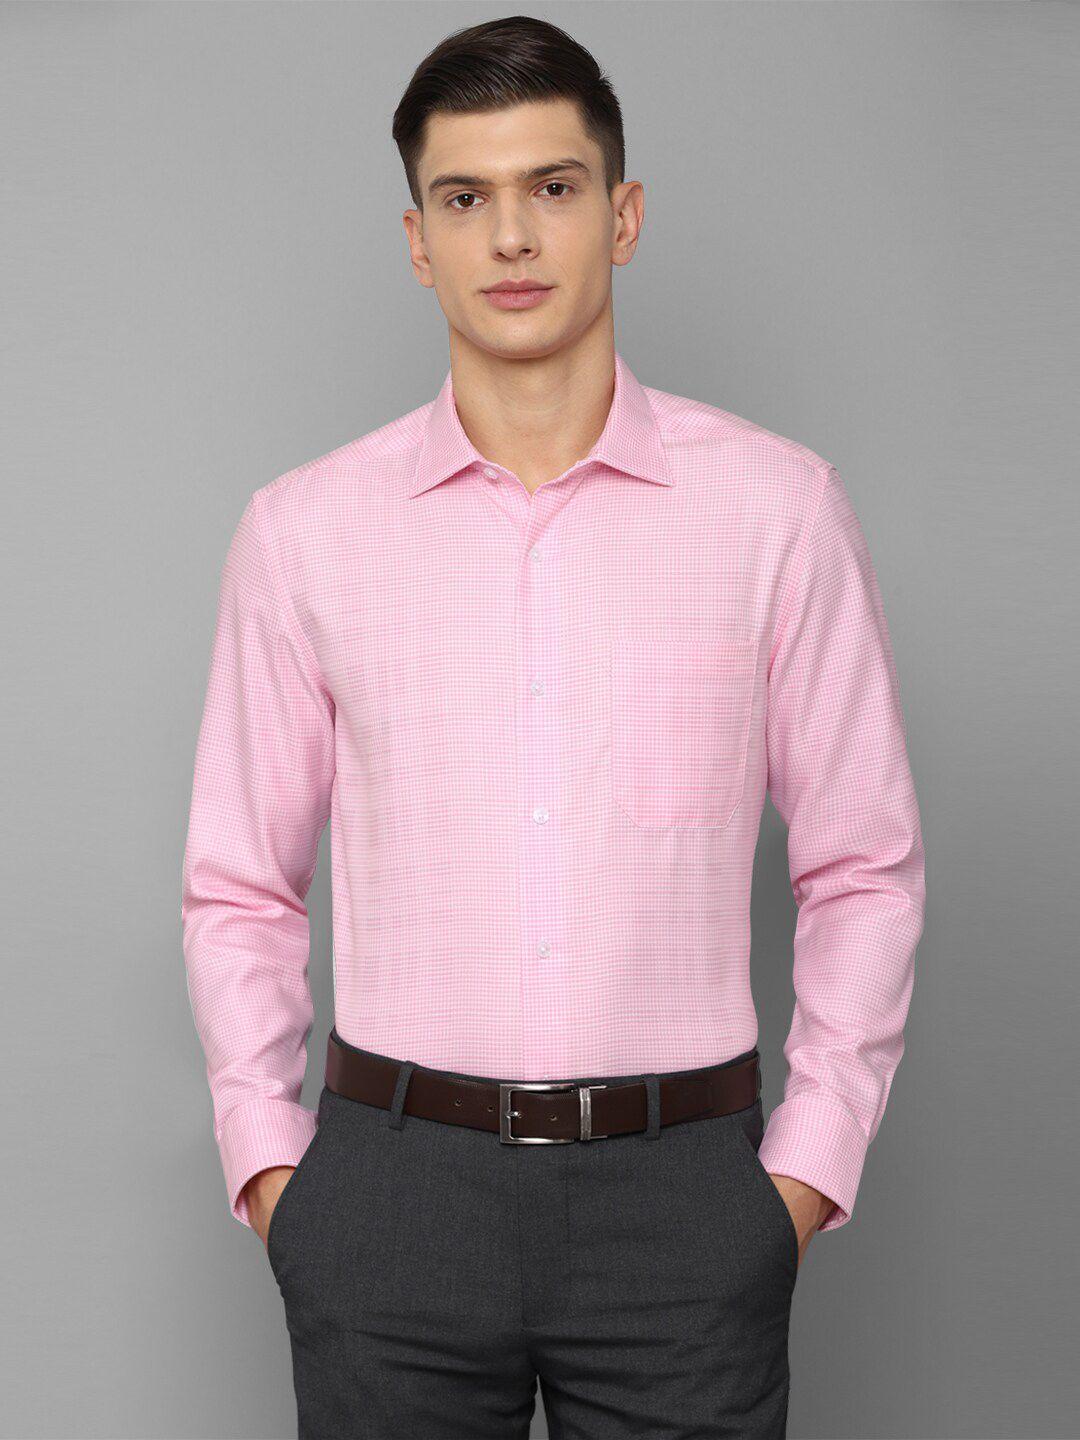 louis philippe men pink formal shirt